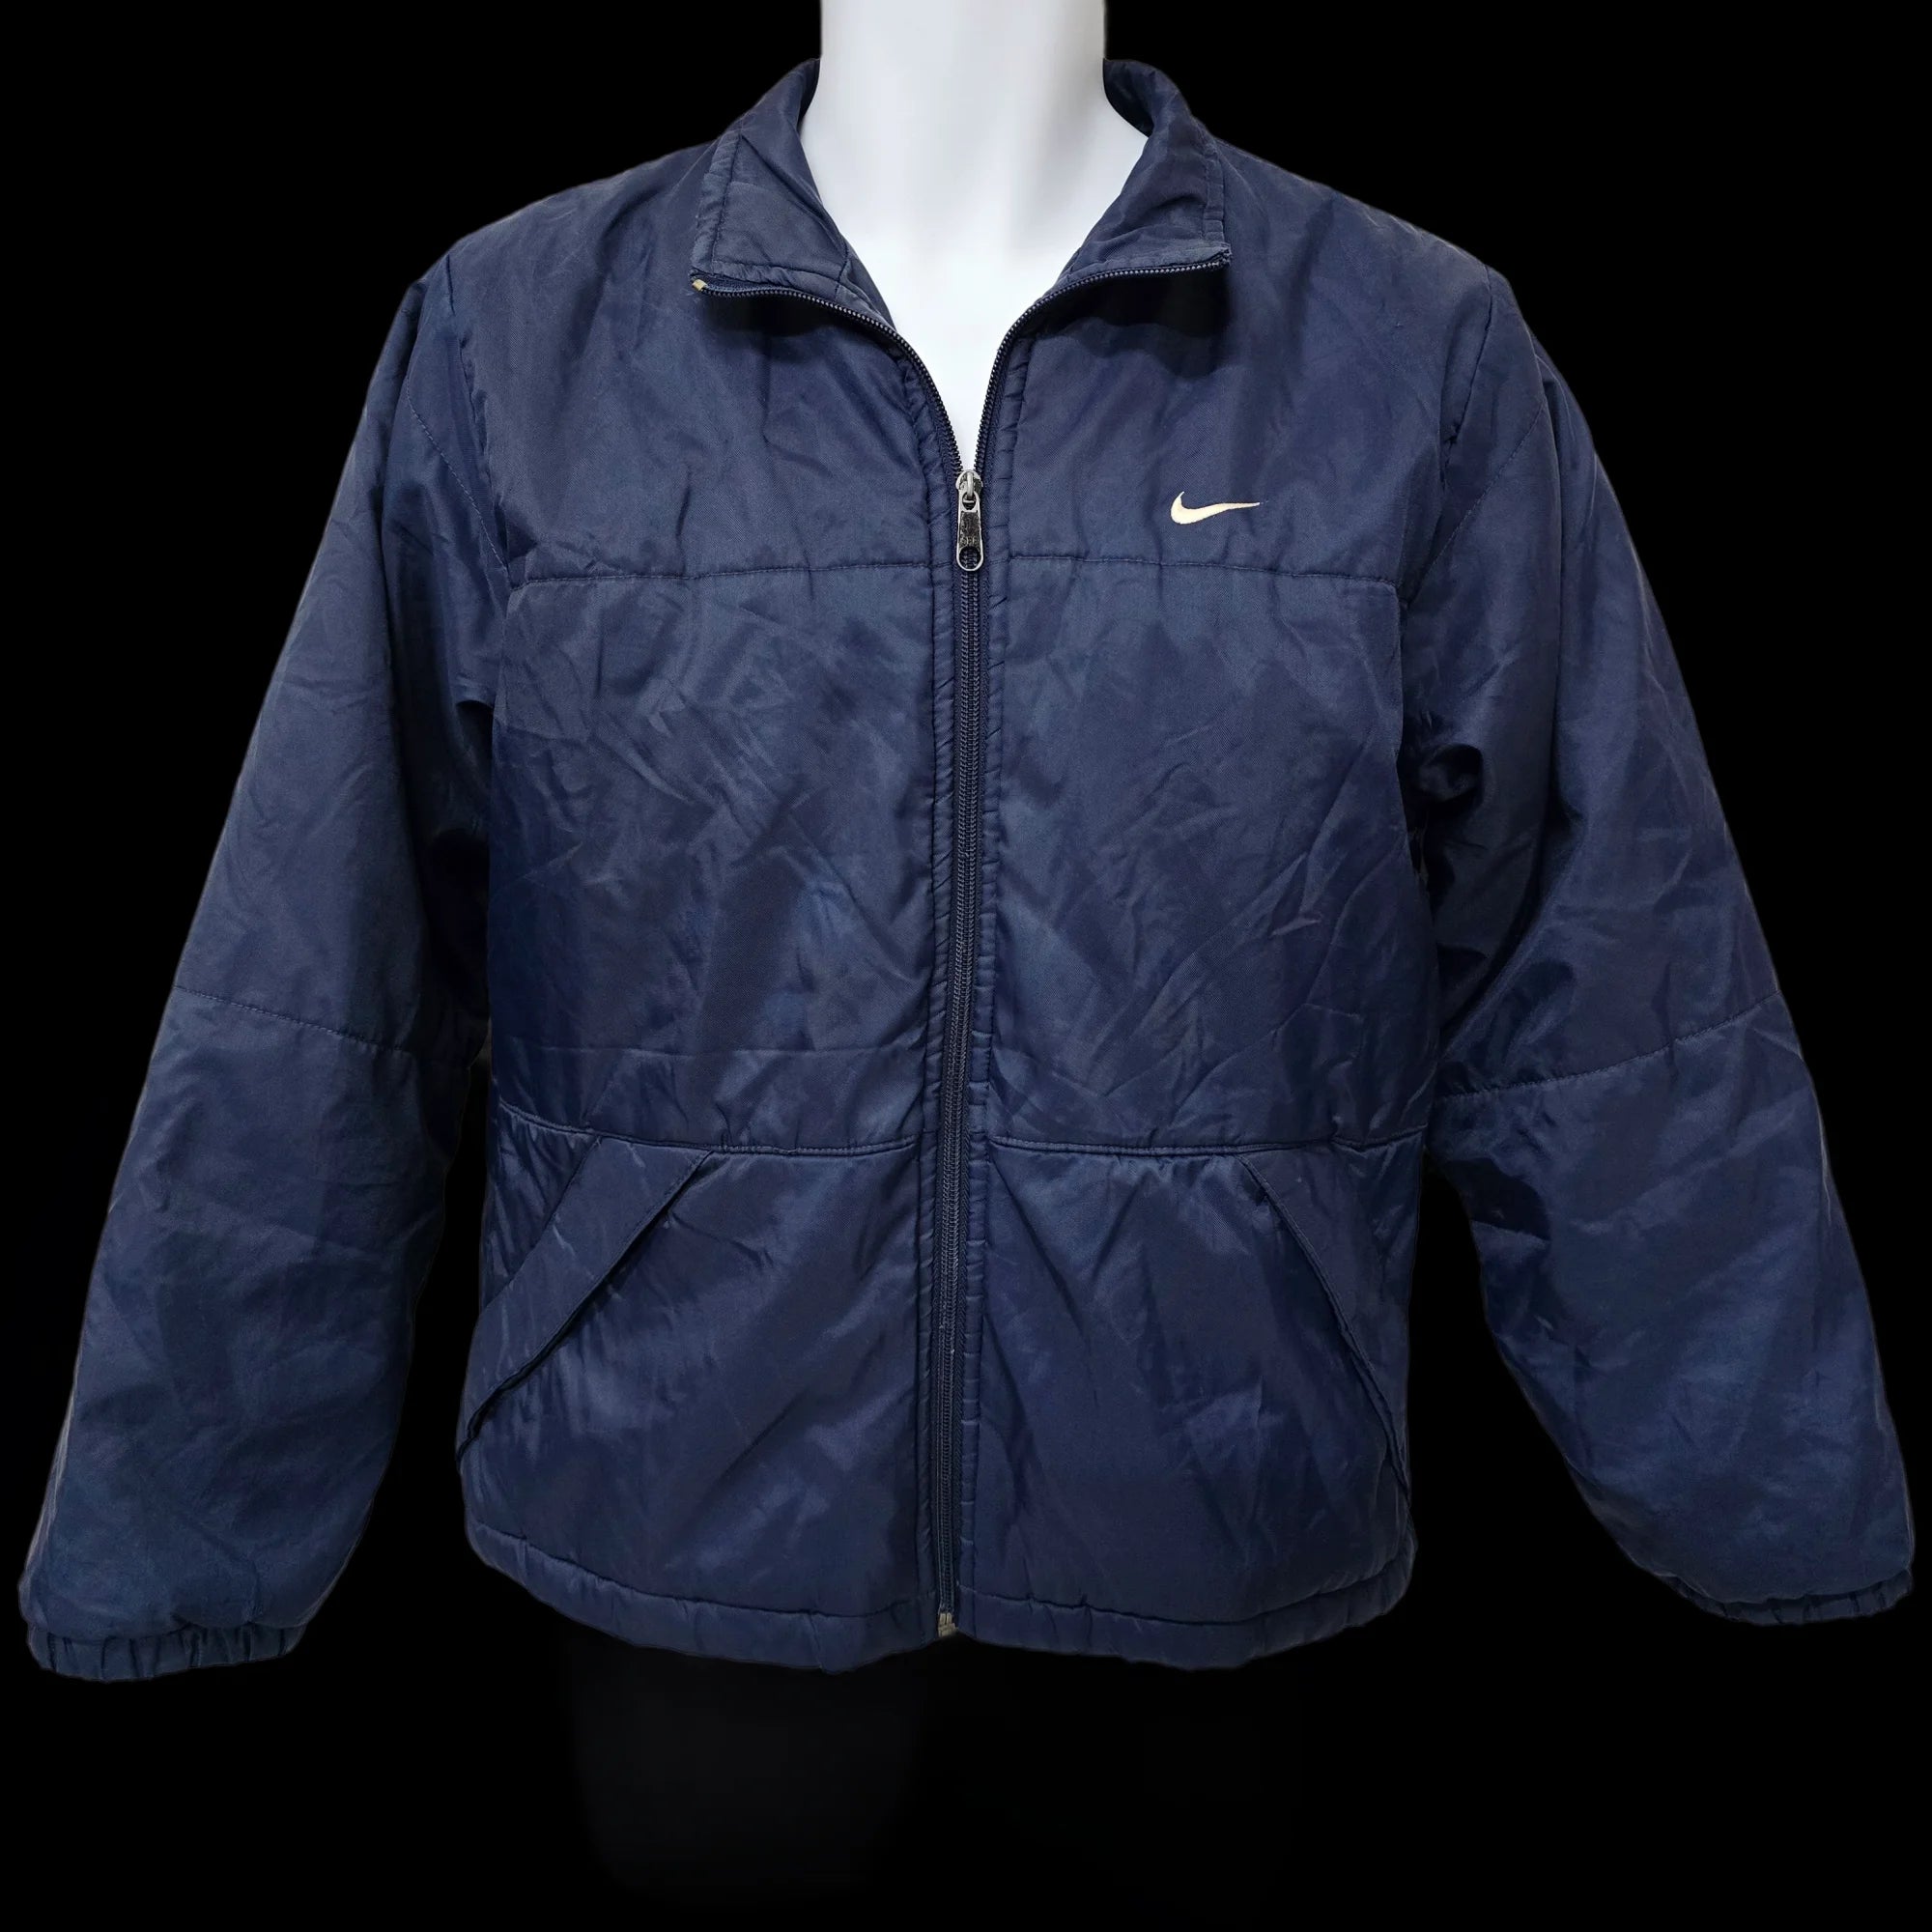 Unisex Nike Blue Bomber Jacket Coat UK Large - 1 - 3465